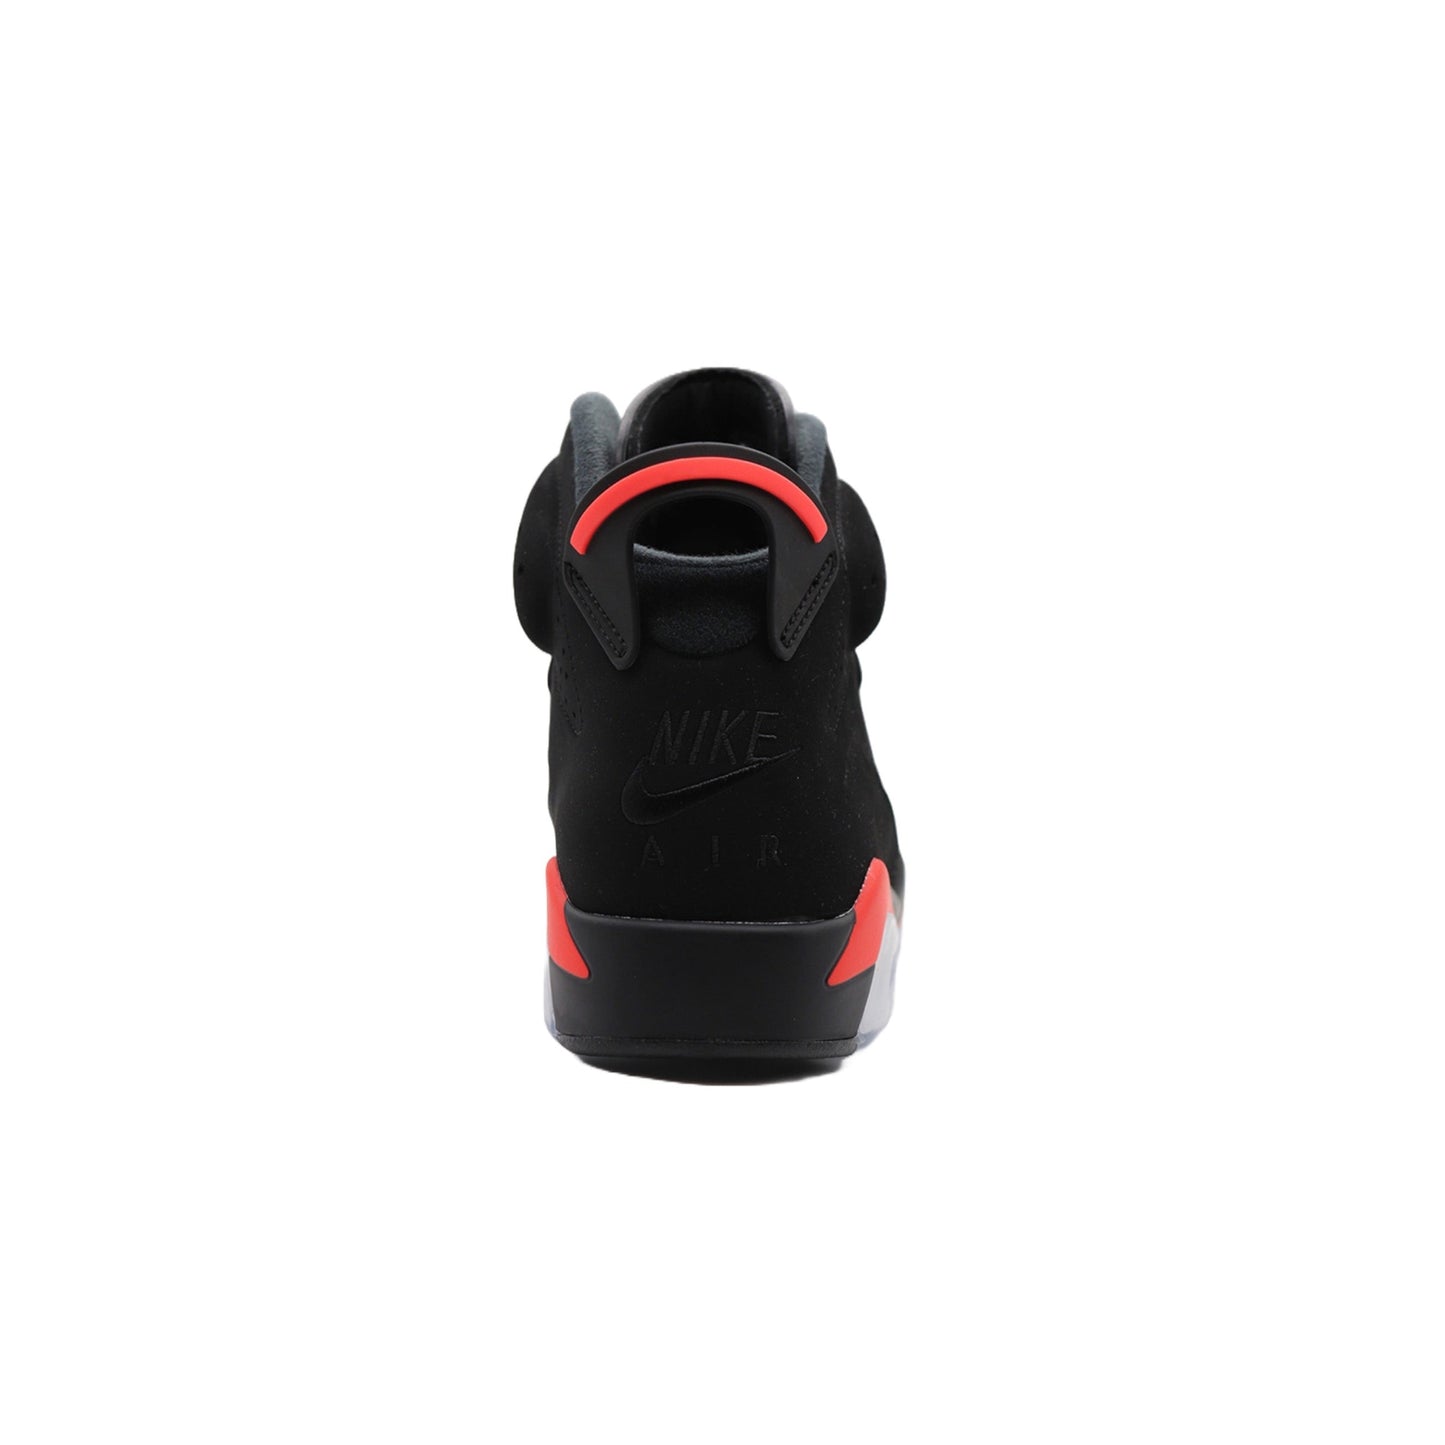 Air Jordan 6, Infrared (2019)